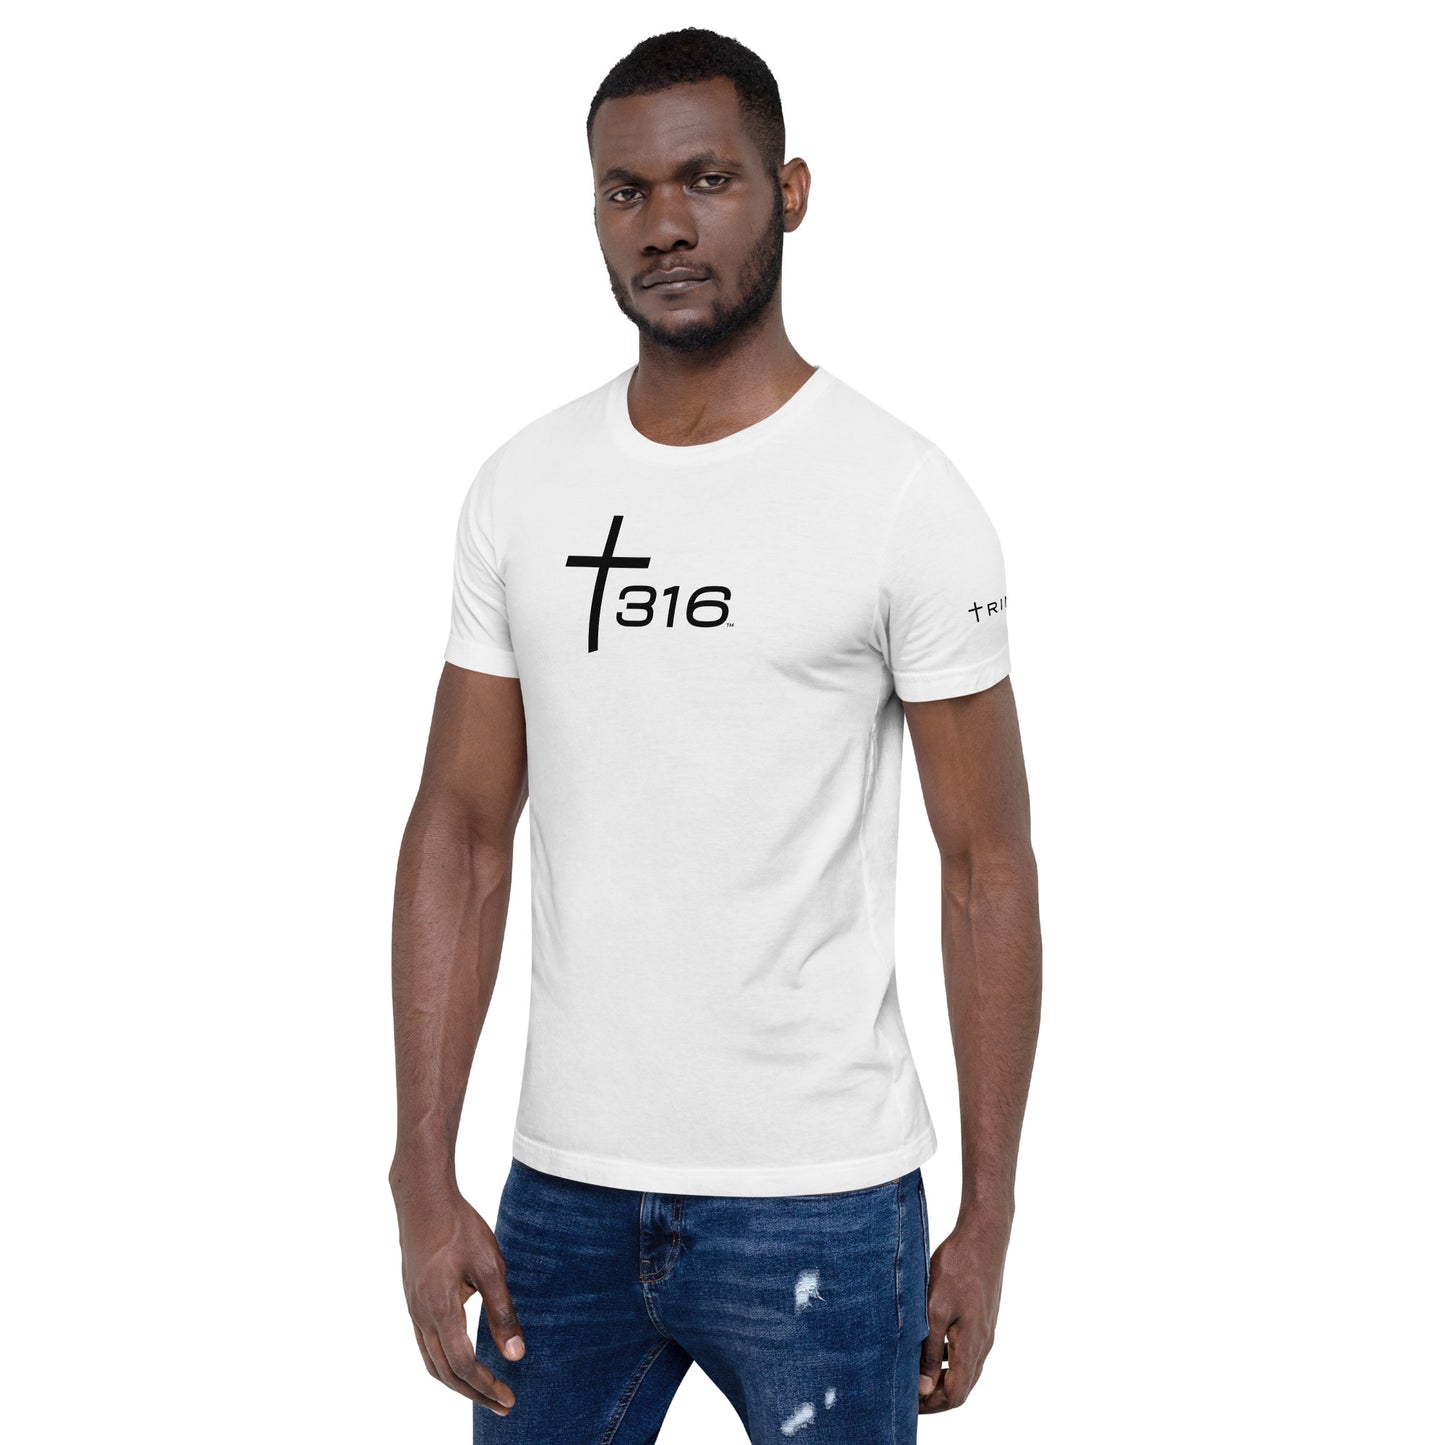 Trinity 316 ICON T-Shirt - White